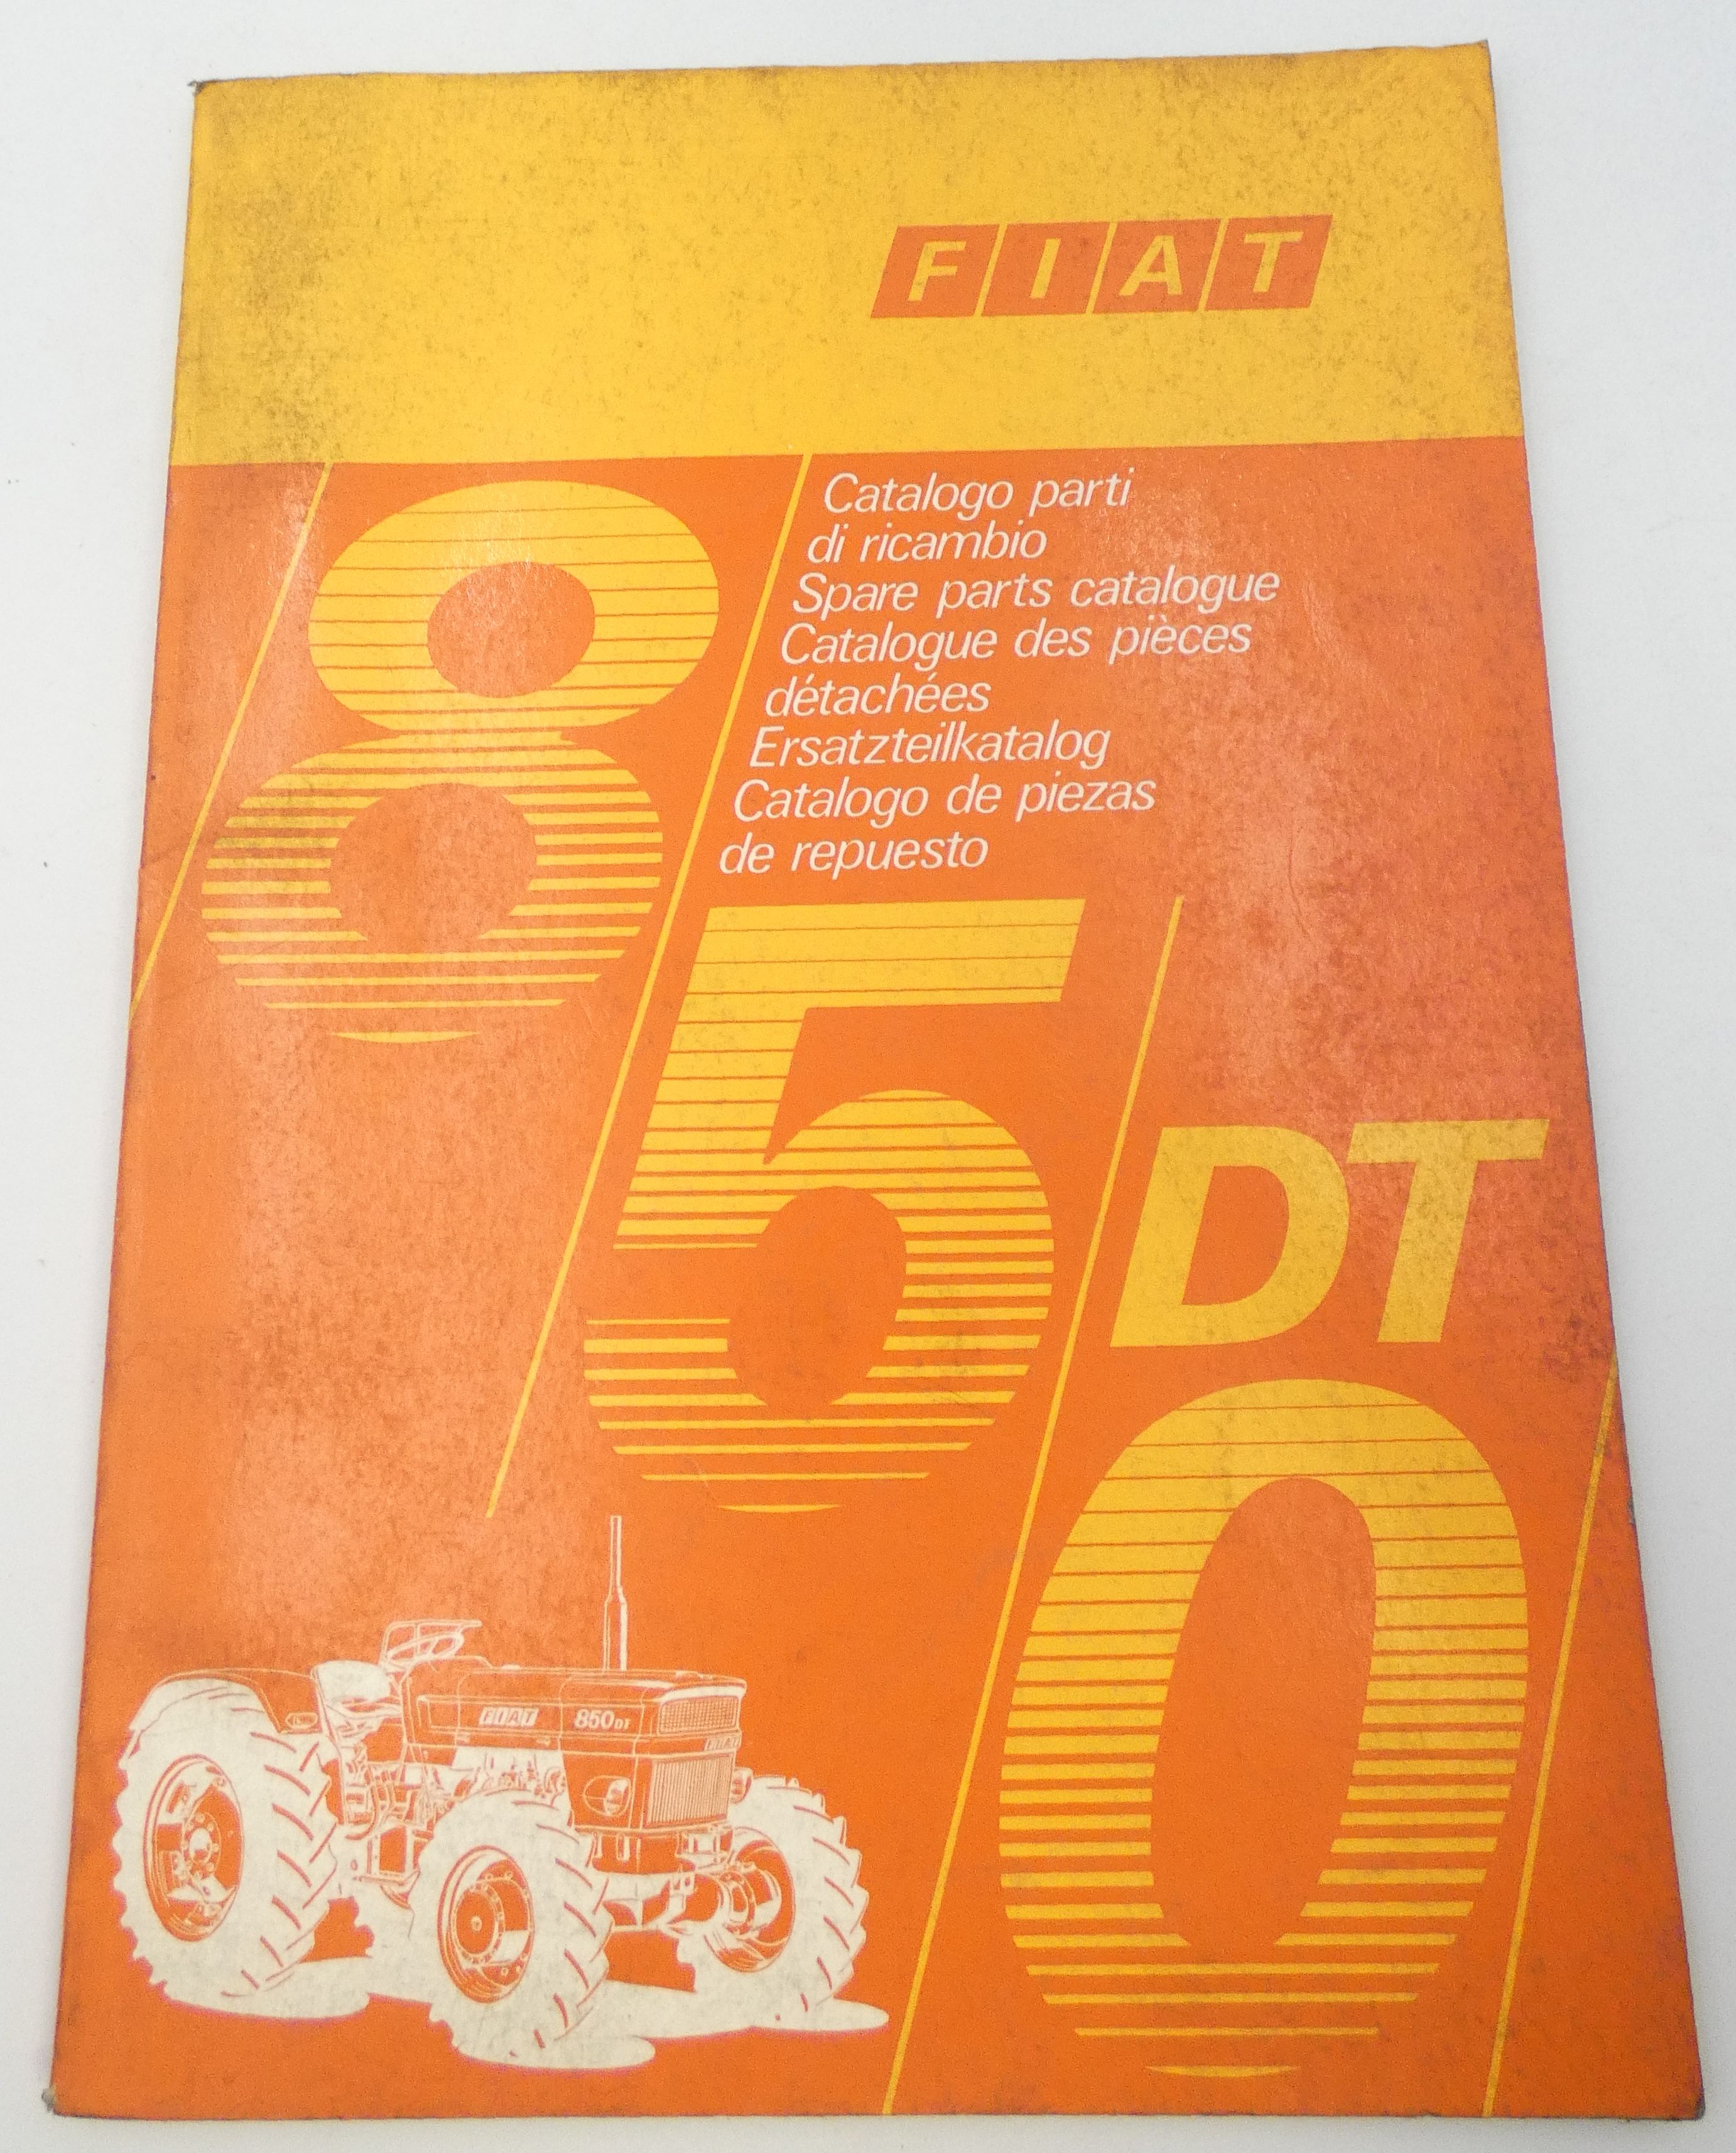 Fiat 850dt spare parts catalogue